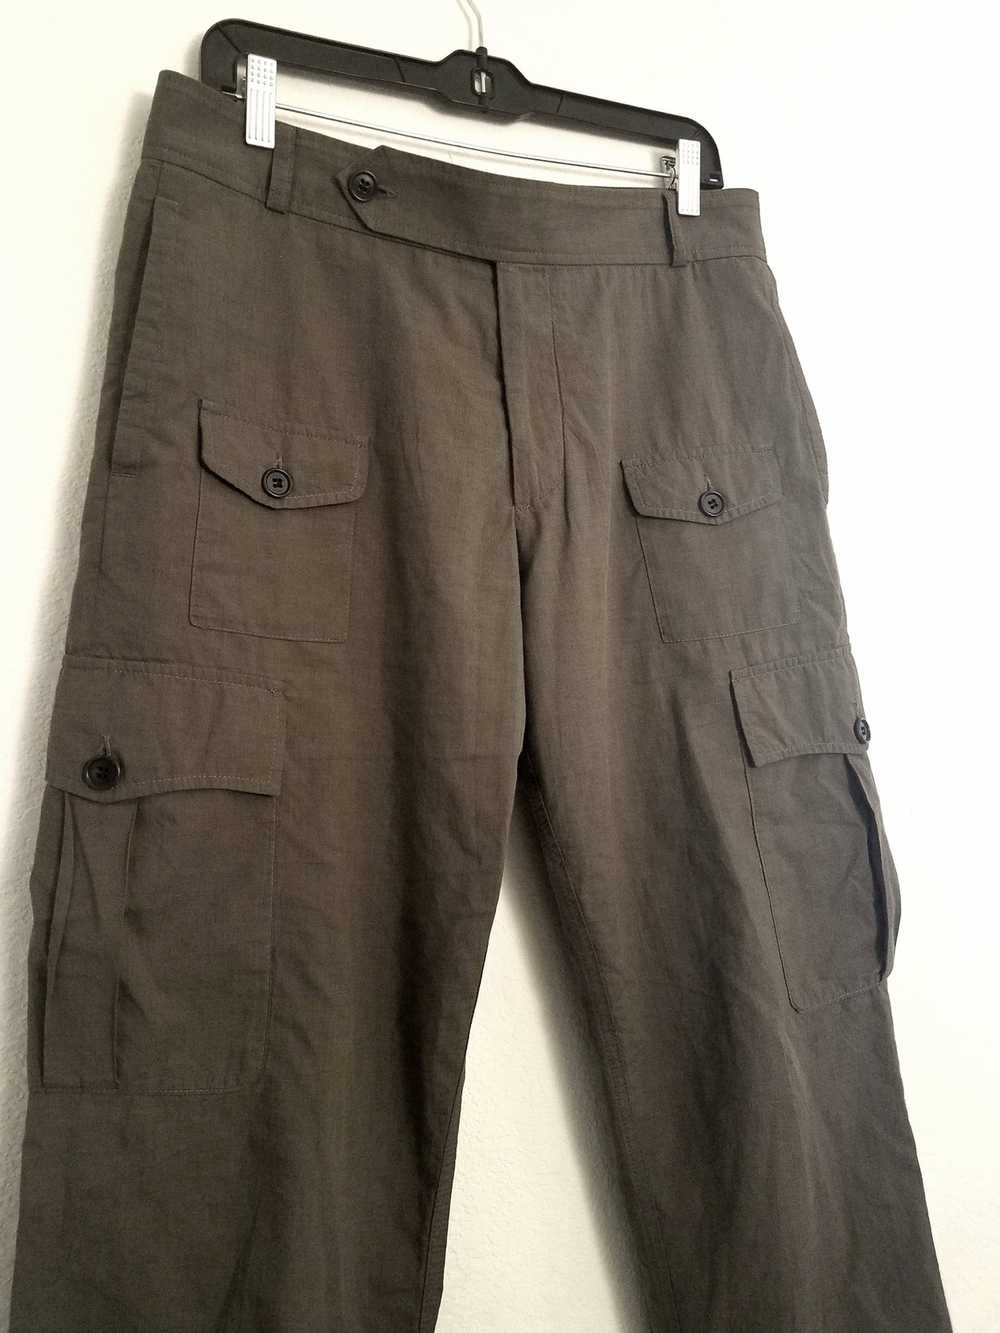 Dries Van Noten Military Pants - image 2